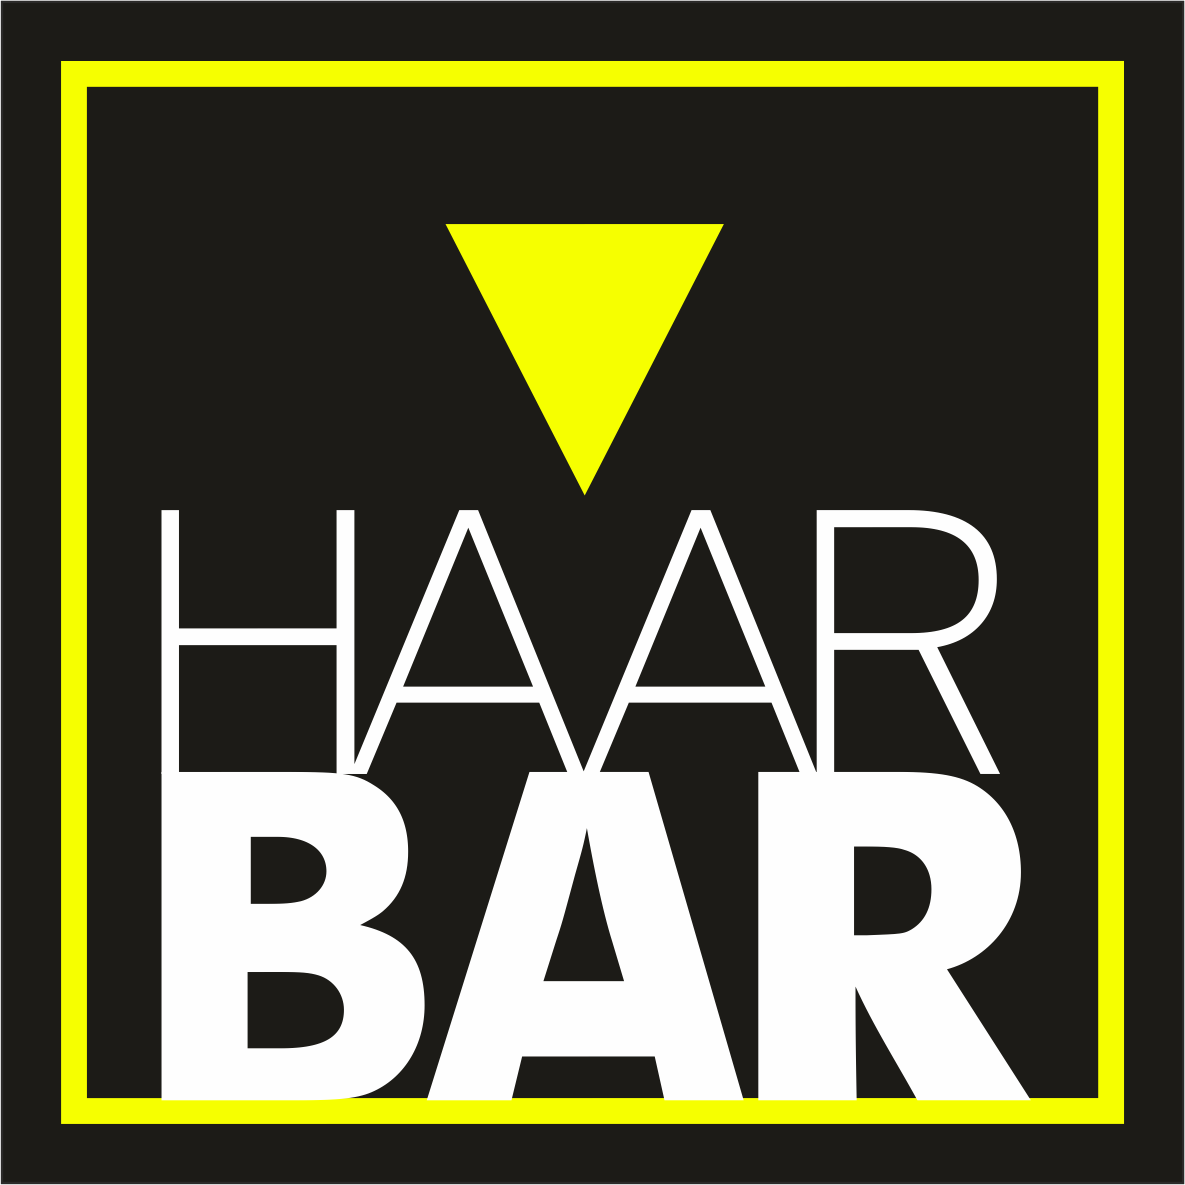 (c) Haar-bar.de